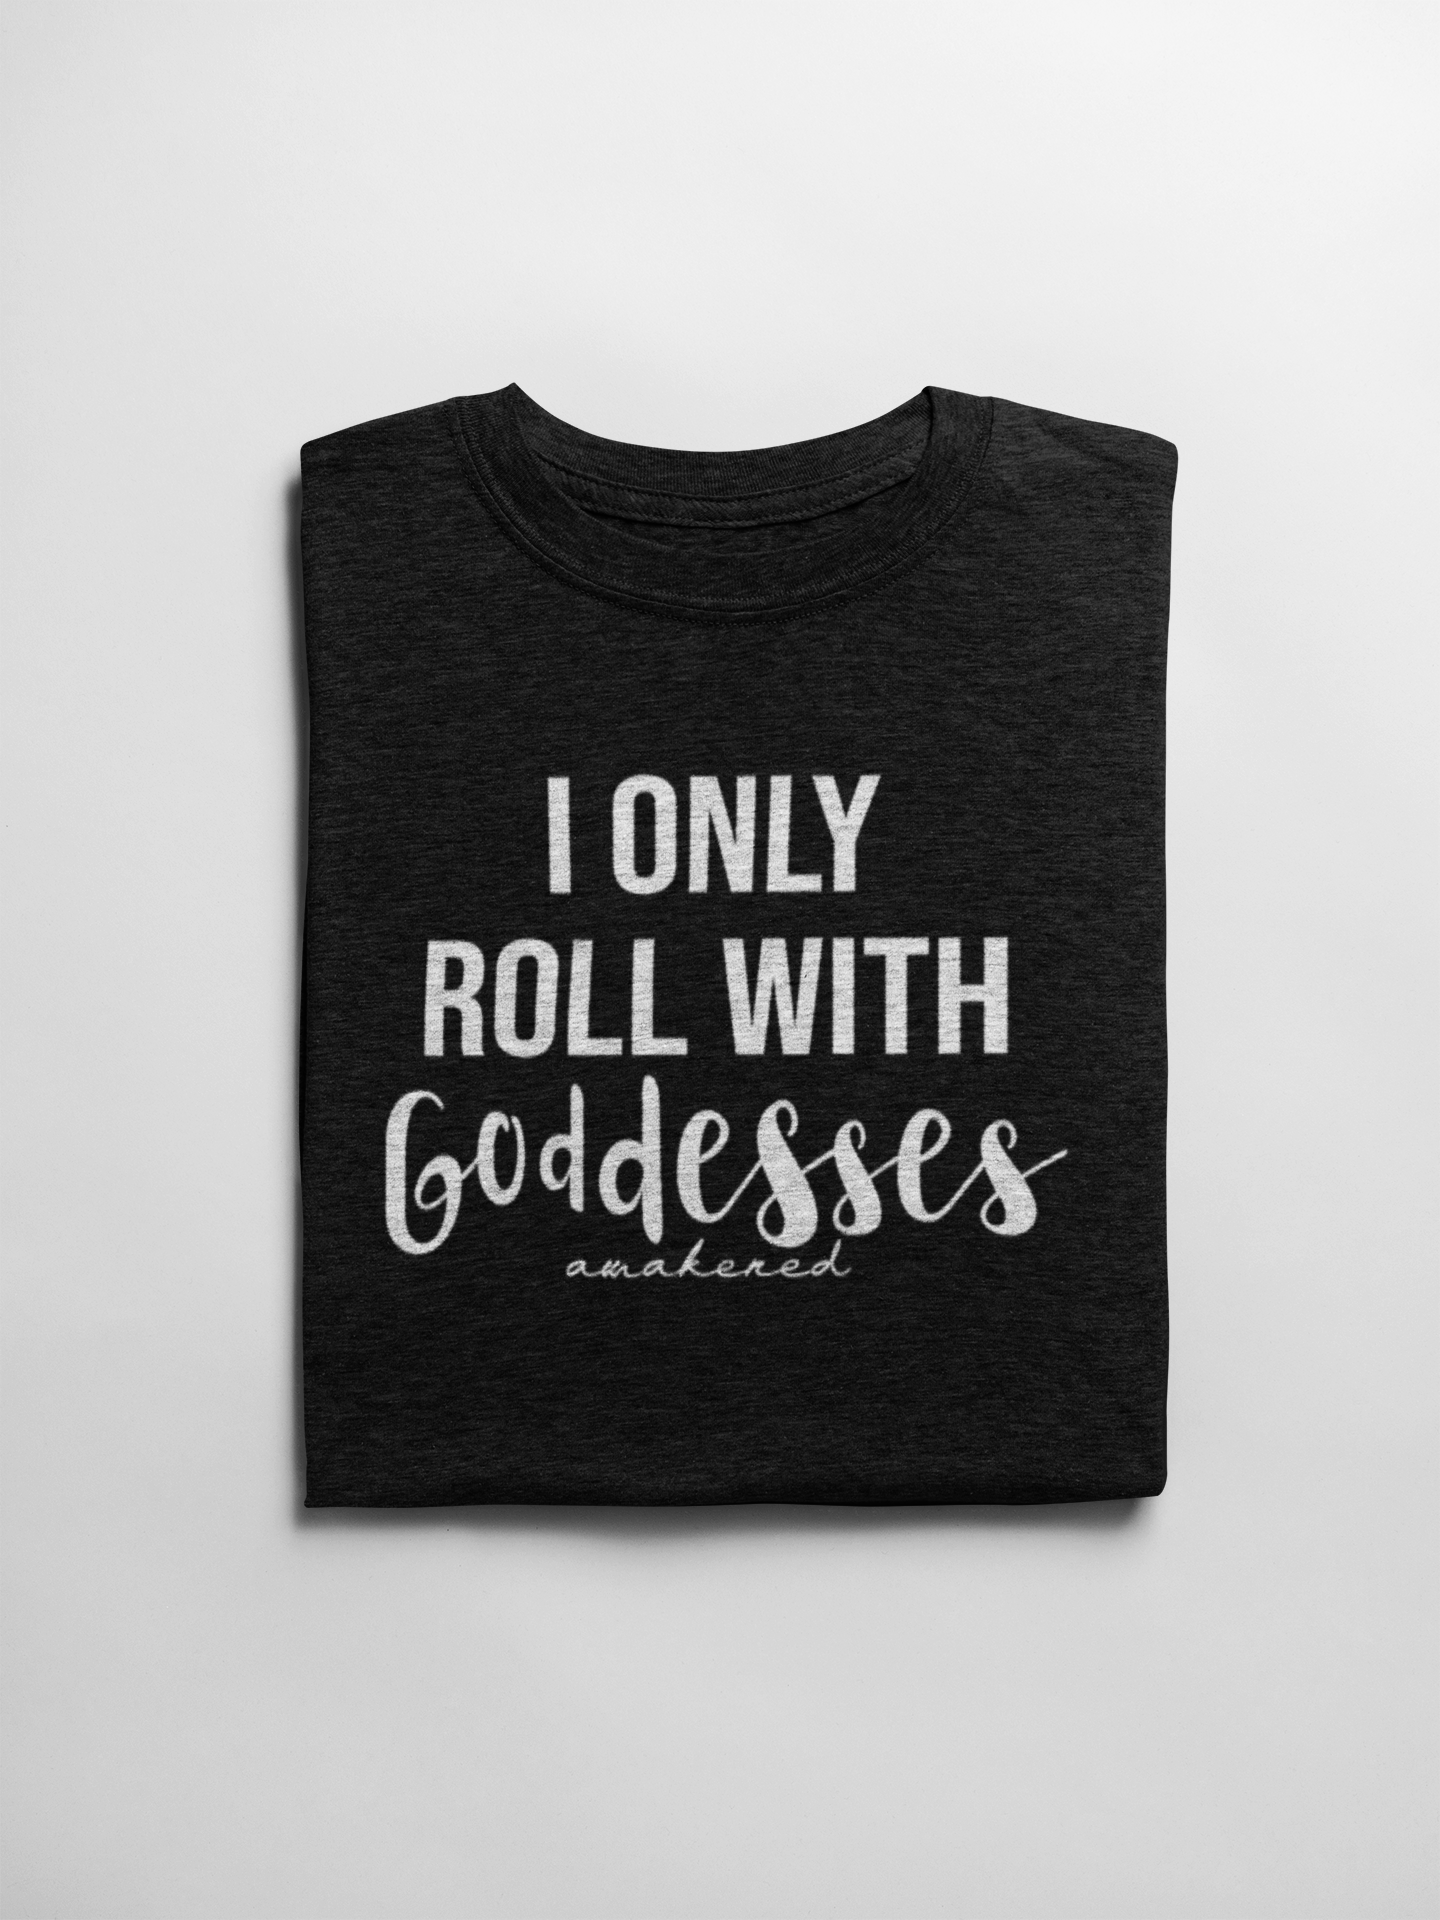 Goddess - T-Shirt